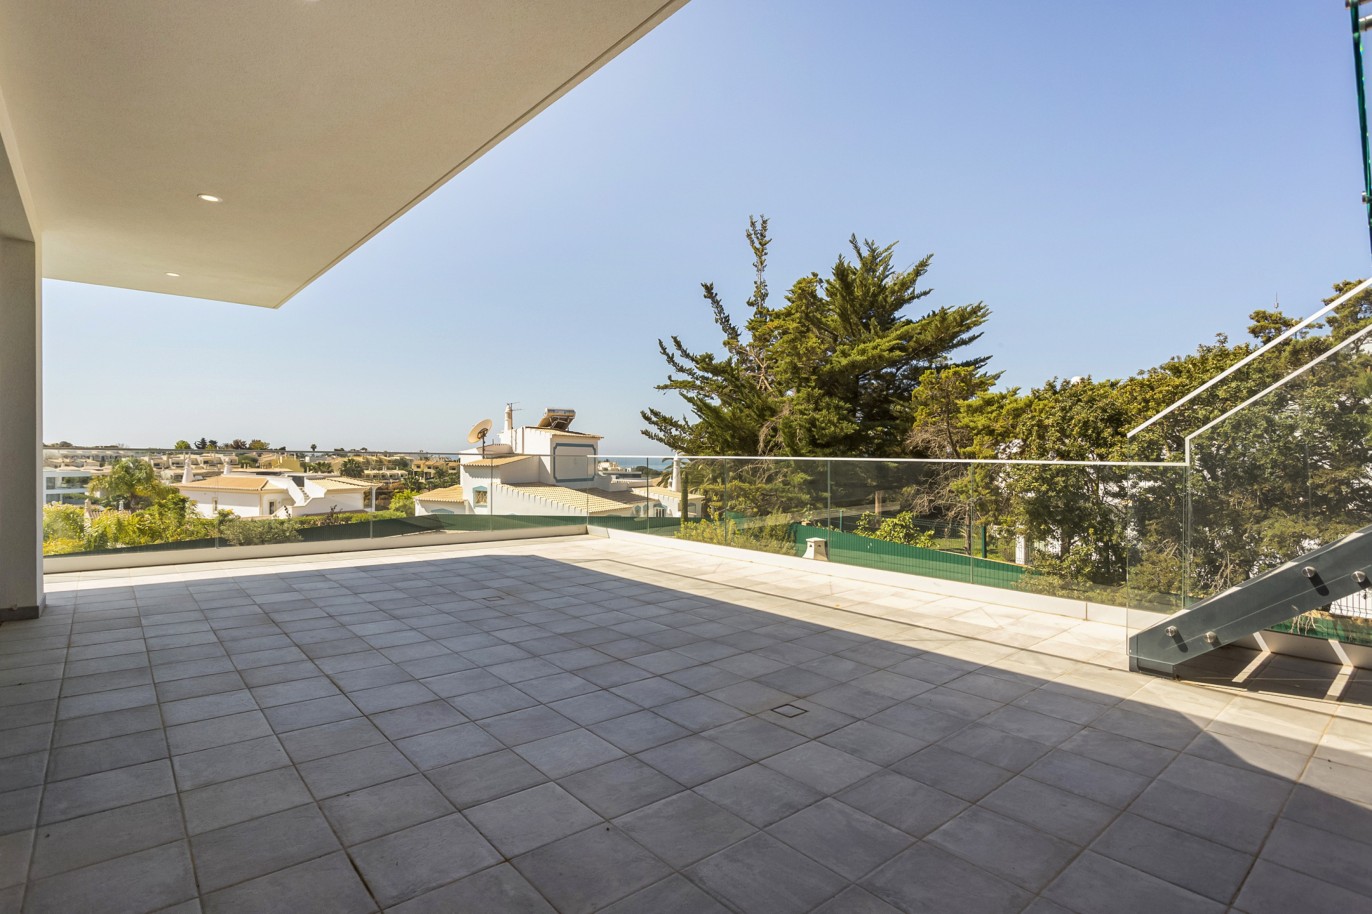 Moradia V4, com piscina, para venda, em Ferragudo, Algarve_222743